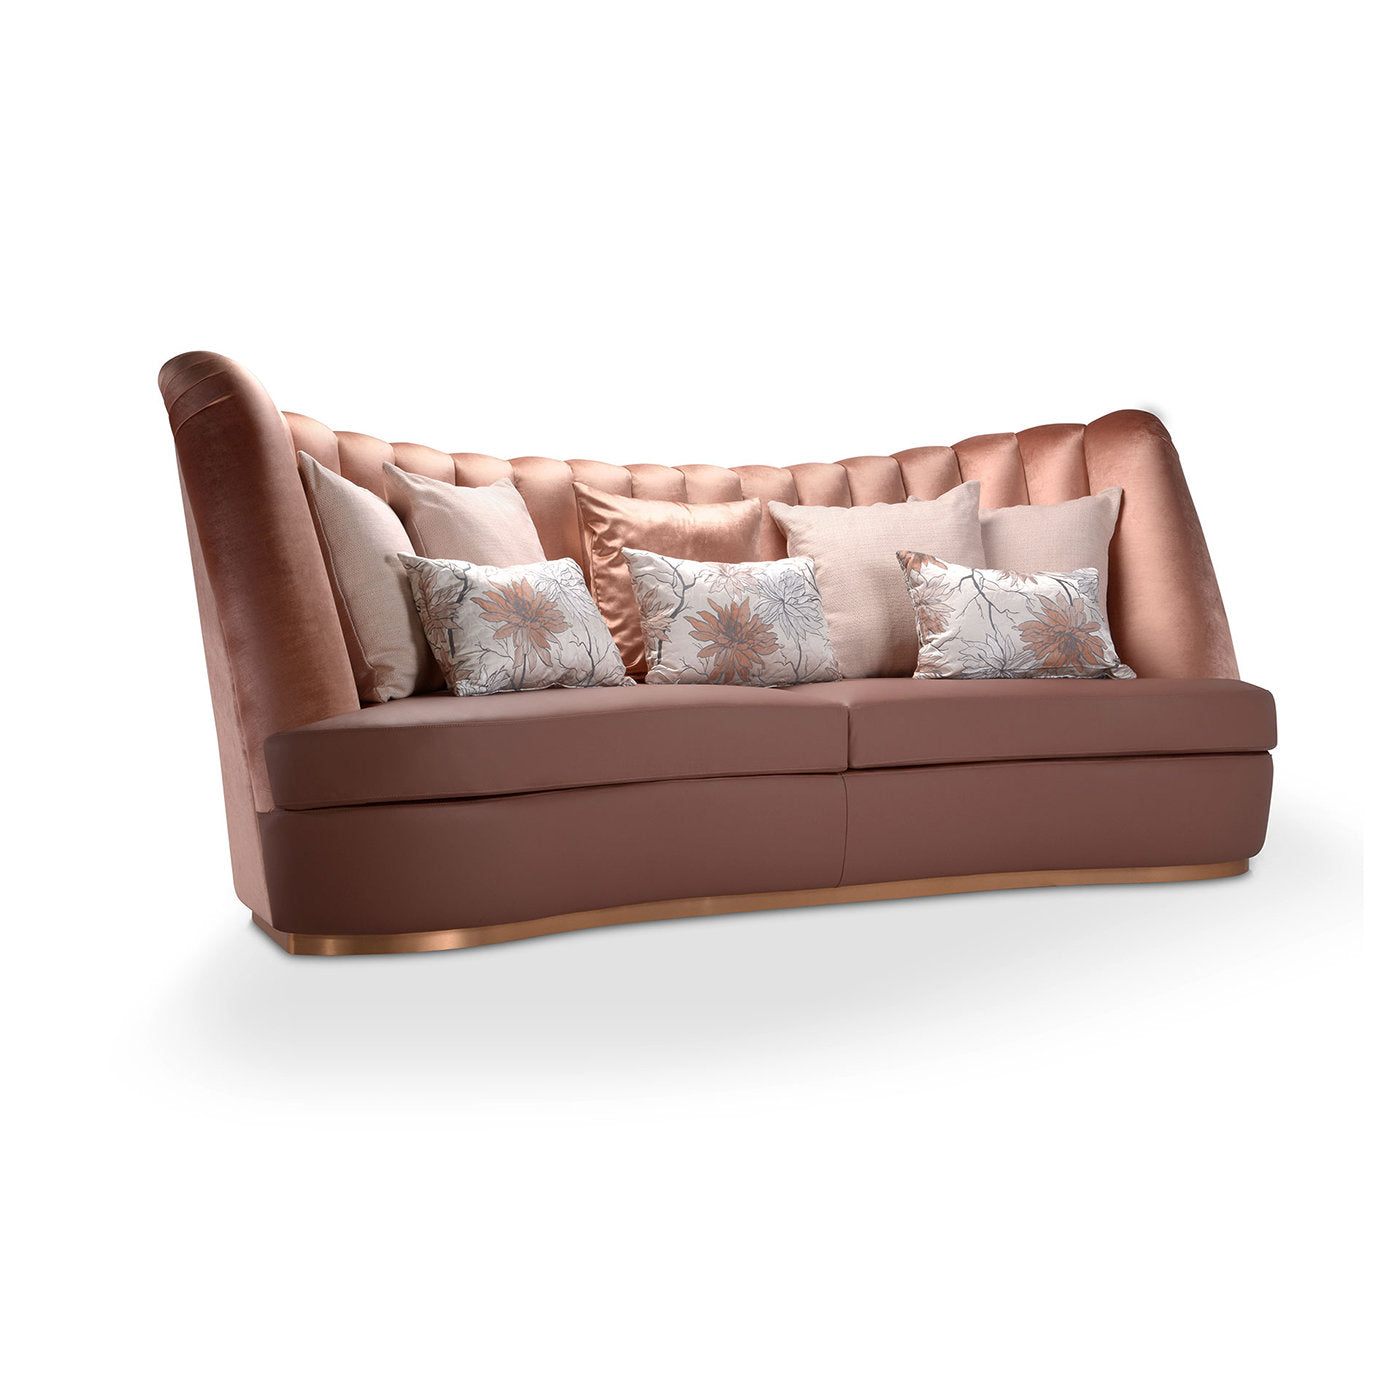 Thalia Pink 3-Seater Sofa - Alternative view 1